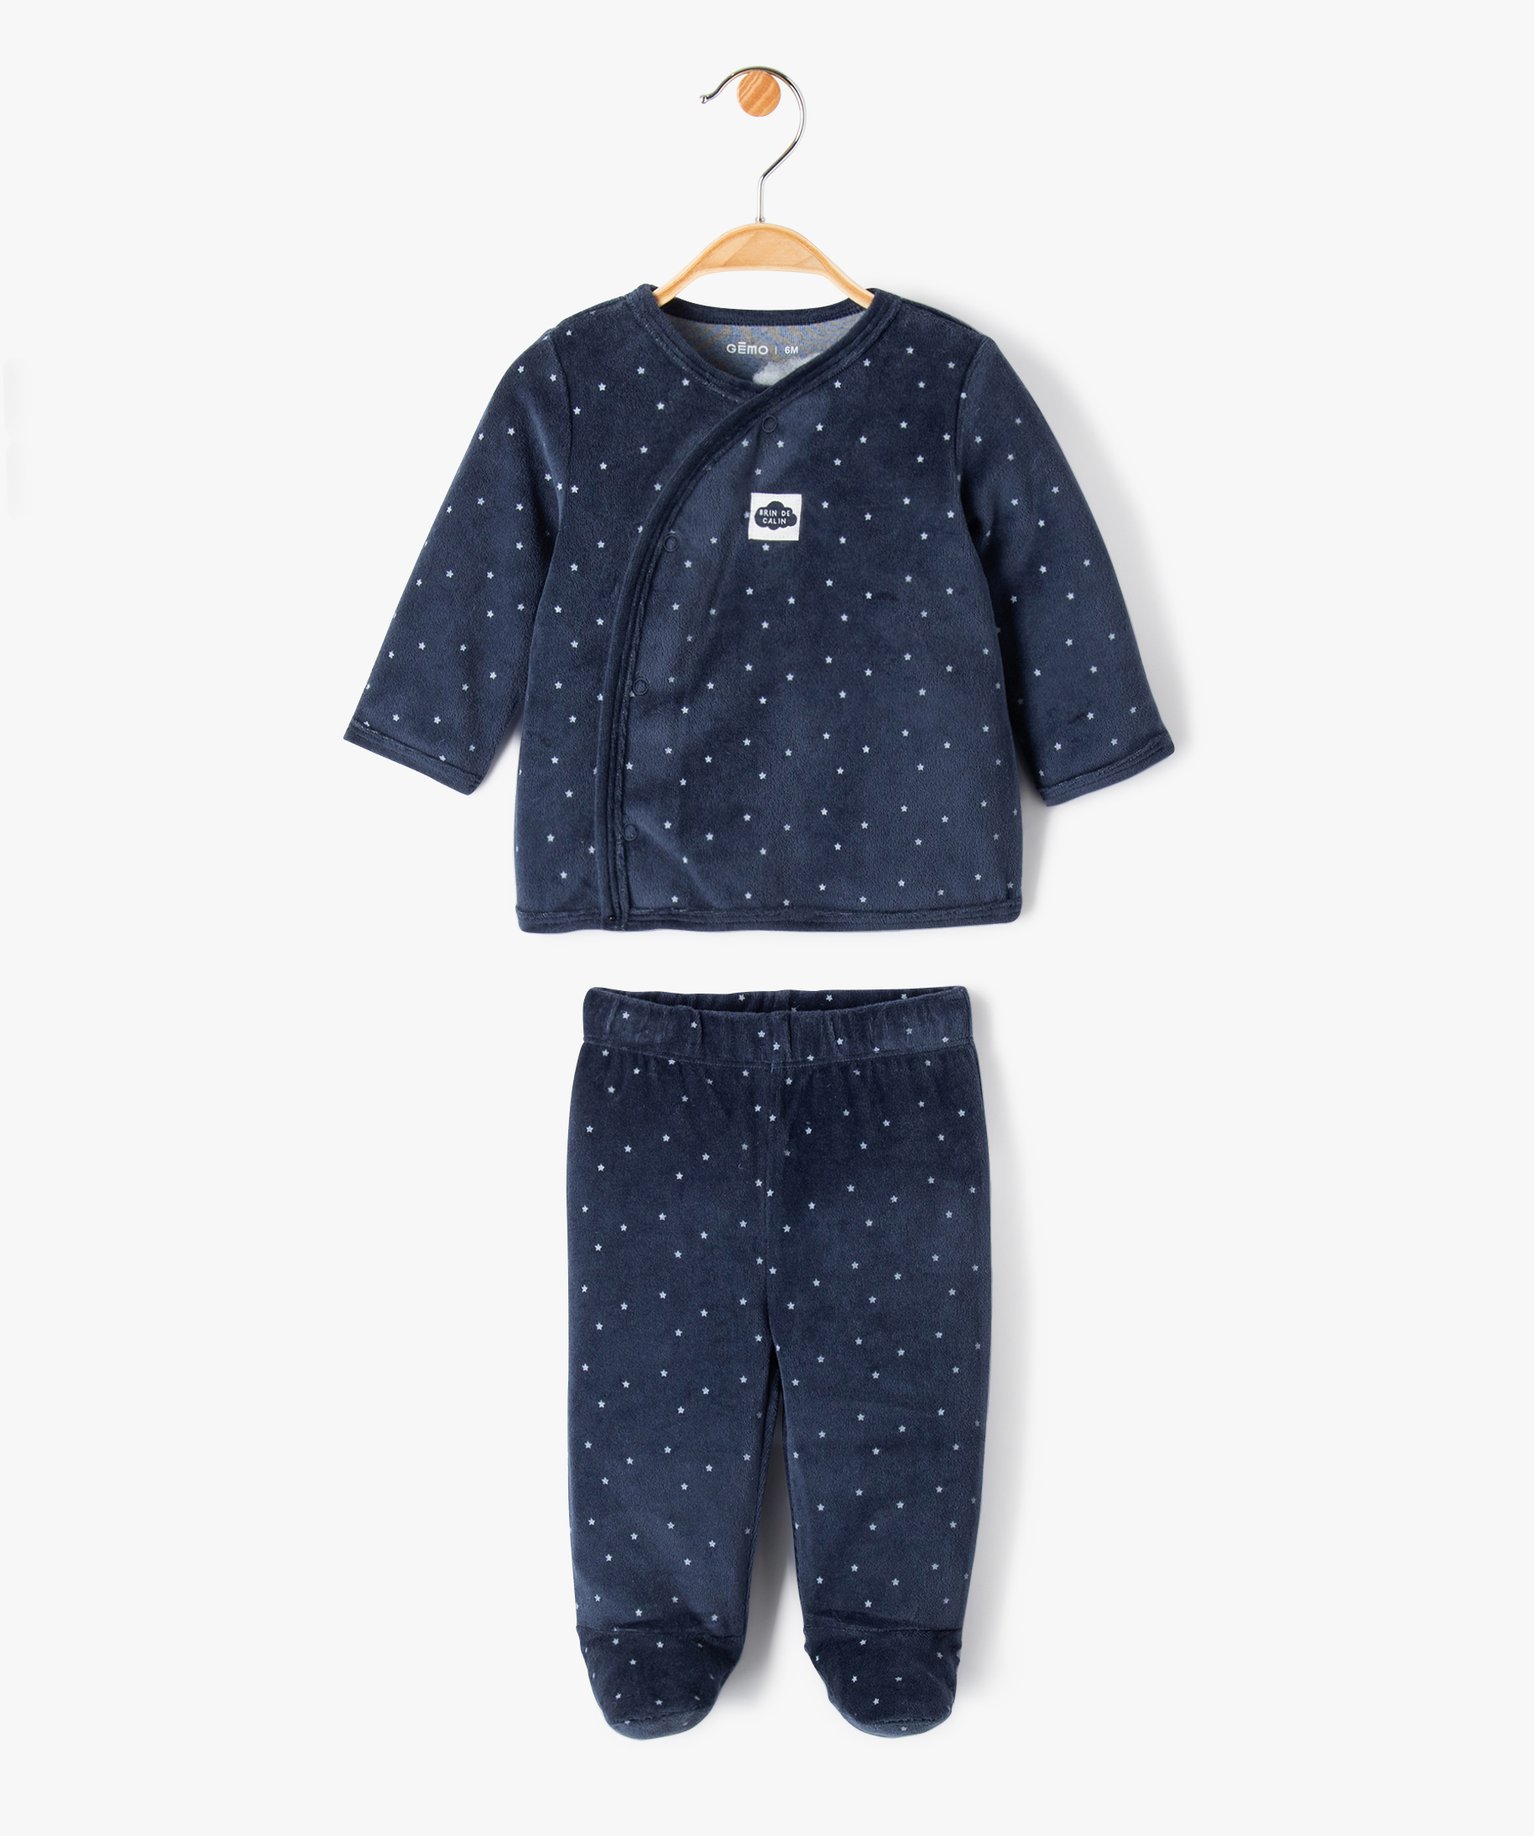 Pyjama bébé 2 pièces en velours à motifs étoiles - 0M - marine - GEMO